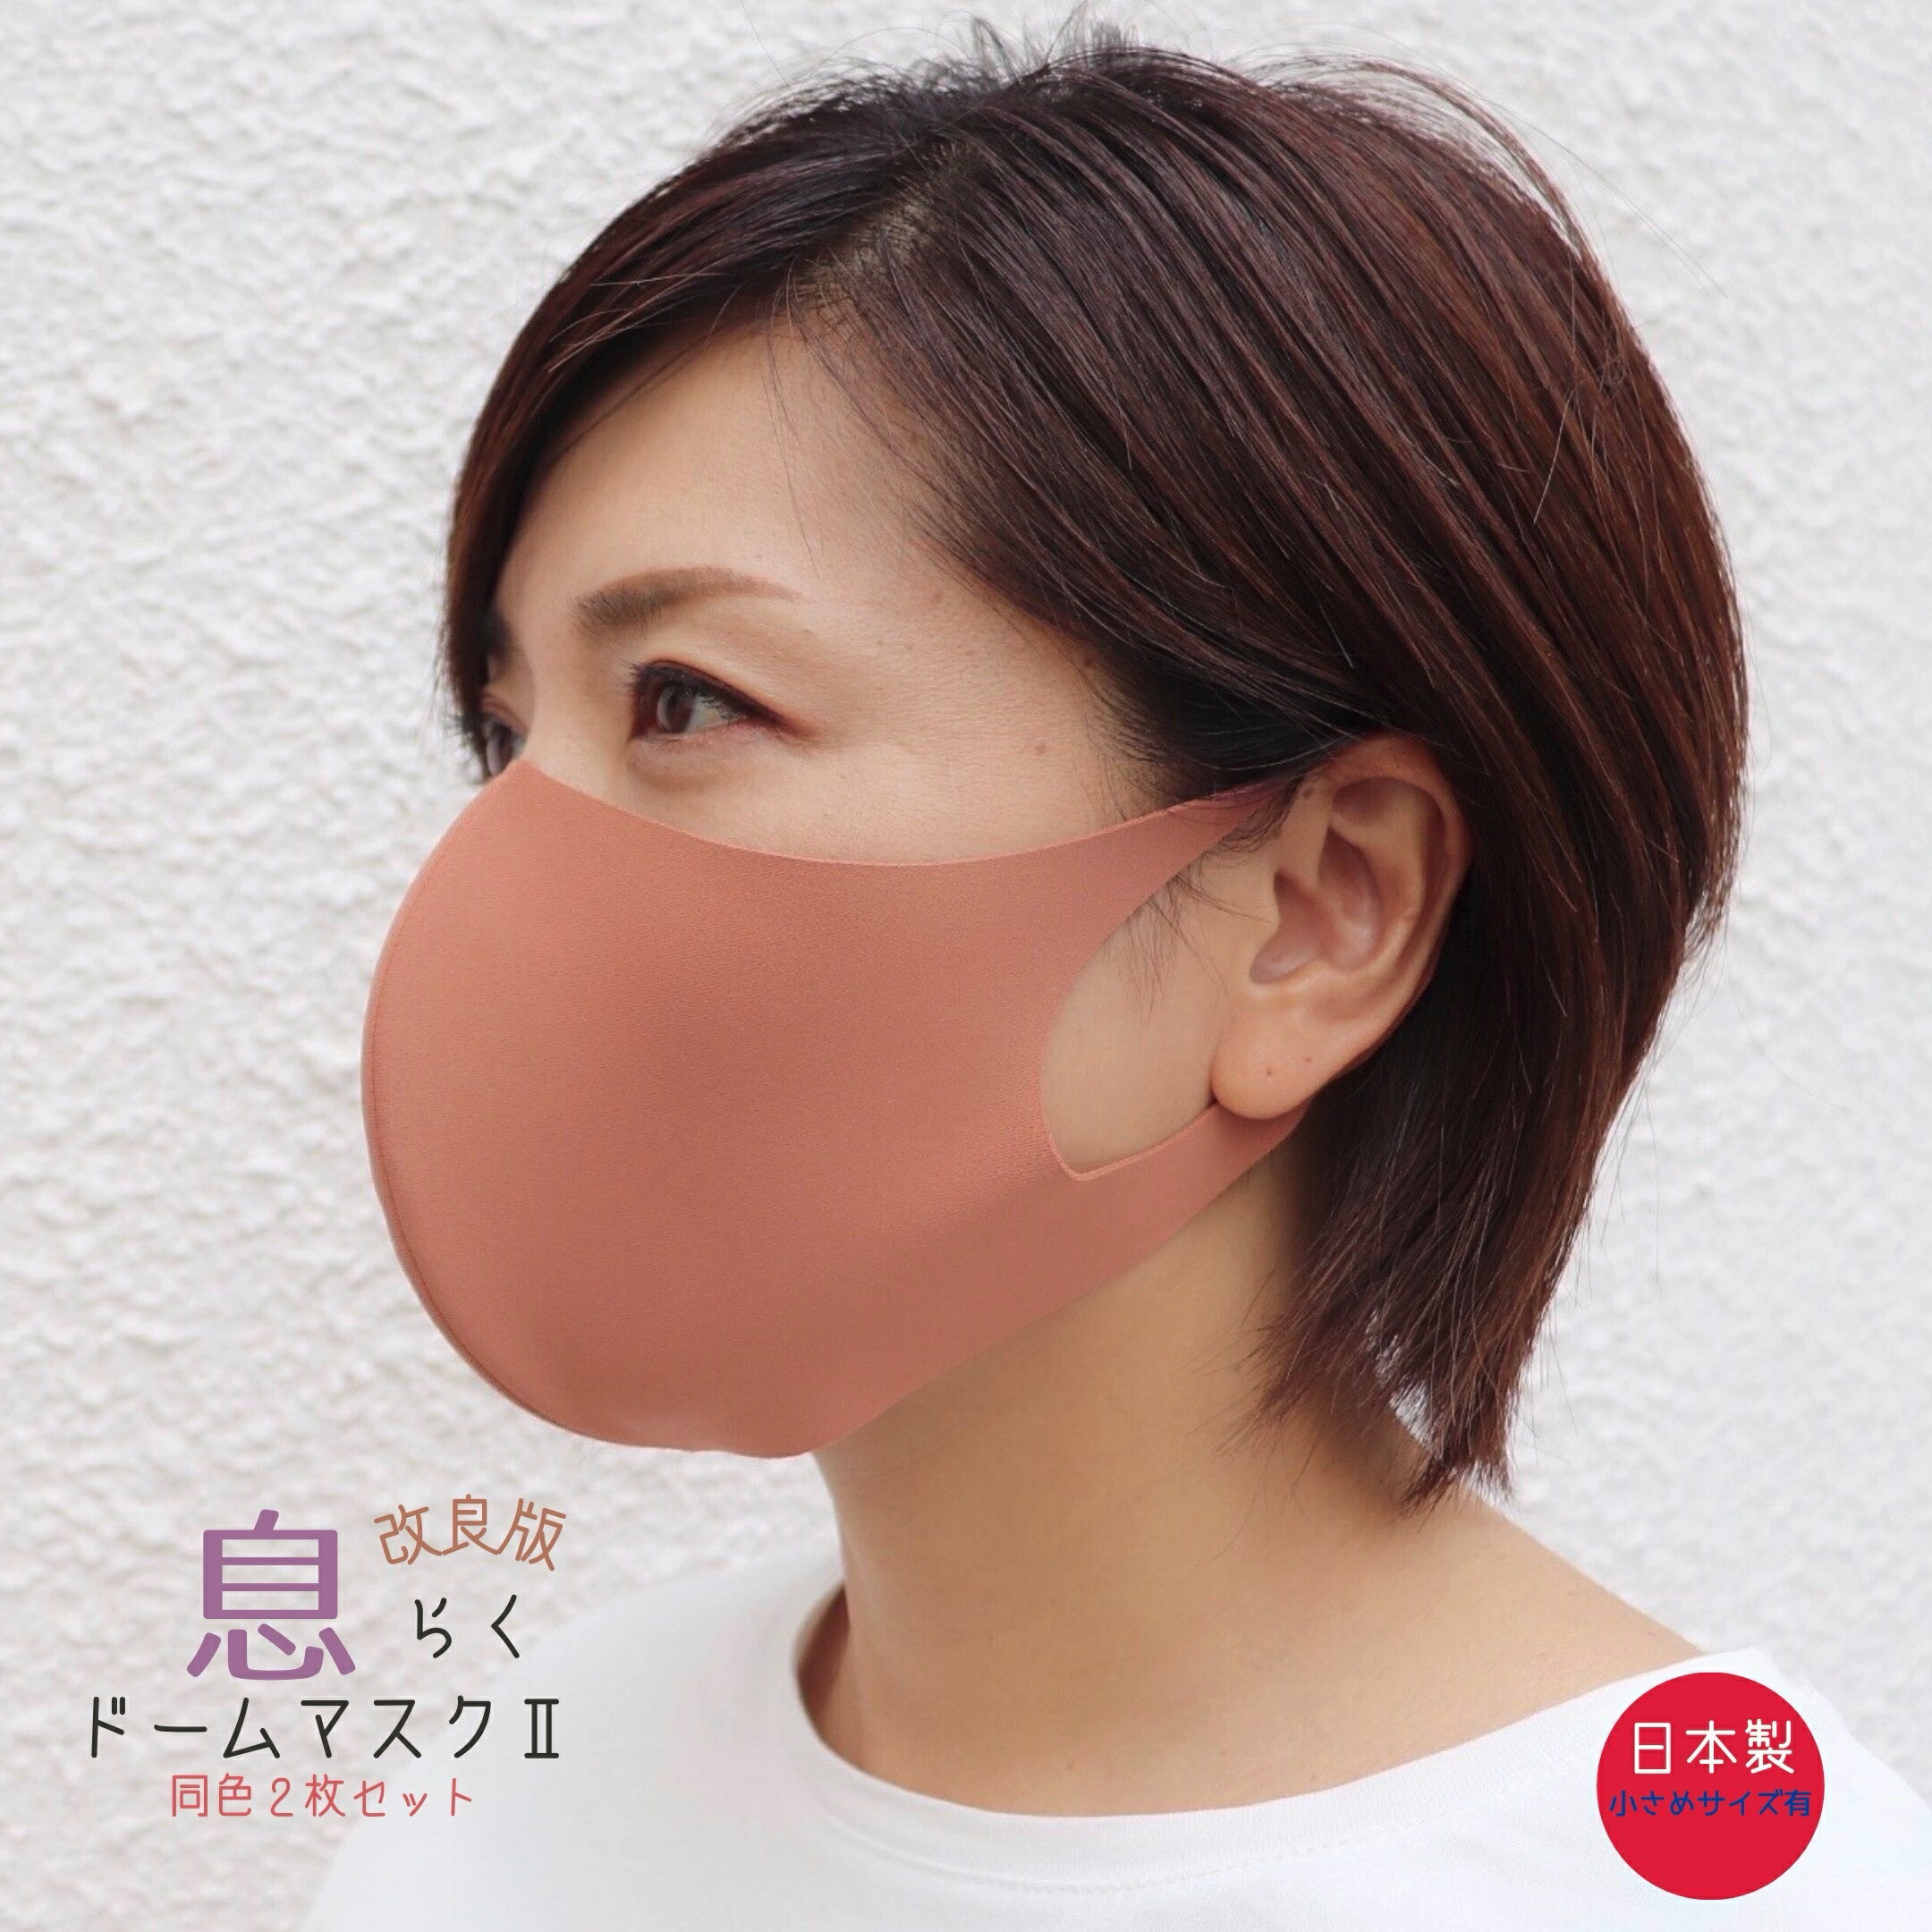 息らくドームマスク2 日本製 ワイヤー入り 小さいサイズあり 大人 息がしやすい 布マスク 立体 超快適 大人気商品 UVカット エチケット 繰り返し使用 洗える 送料無料 個包装 男女兼用 同色2枚セット レディース メンズ